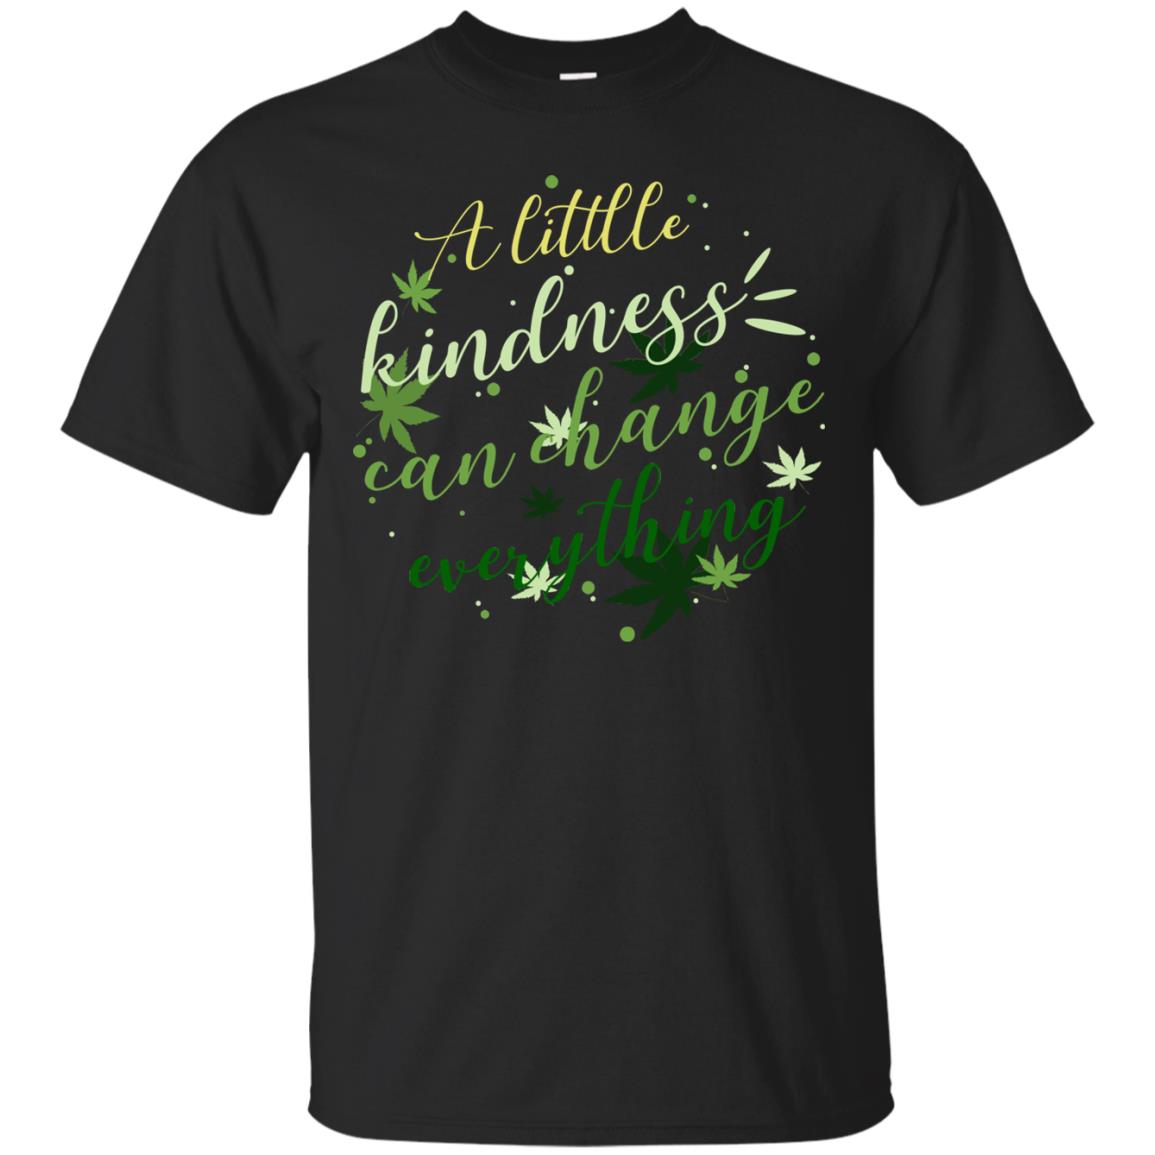 A Little Kindness Can Change Everything ShirtG200 Gildan Ultra Cotton T-Shirt